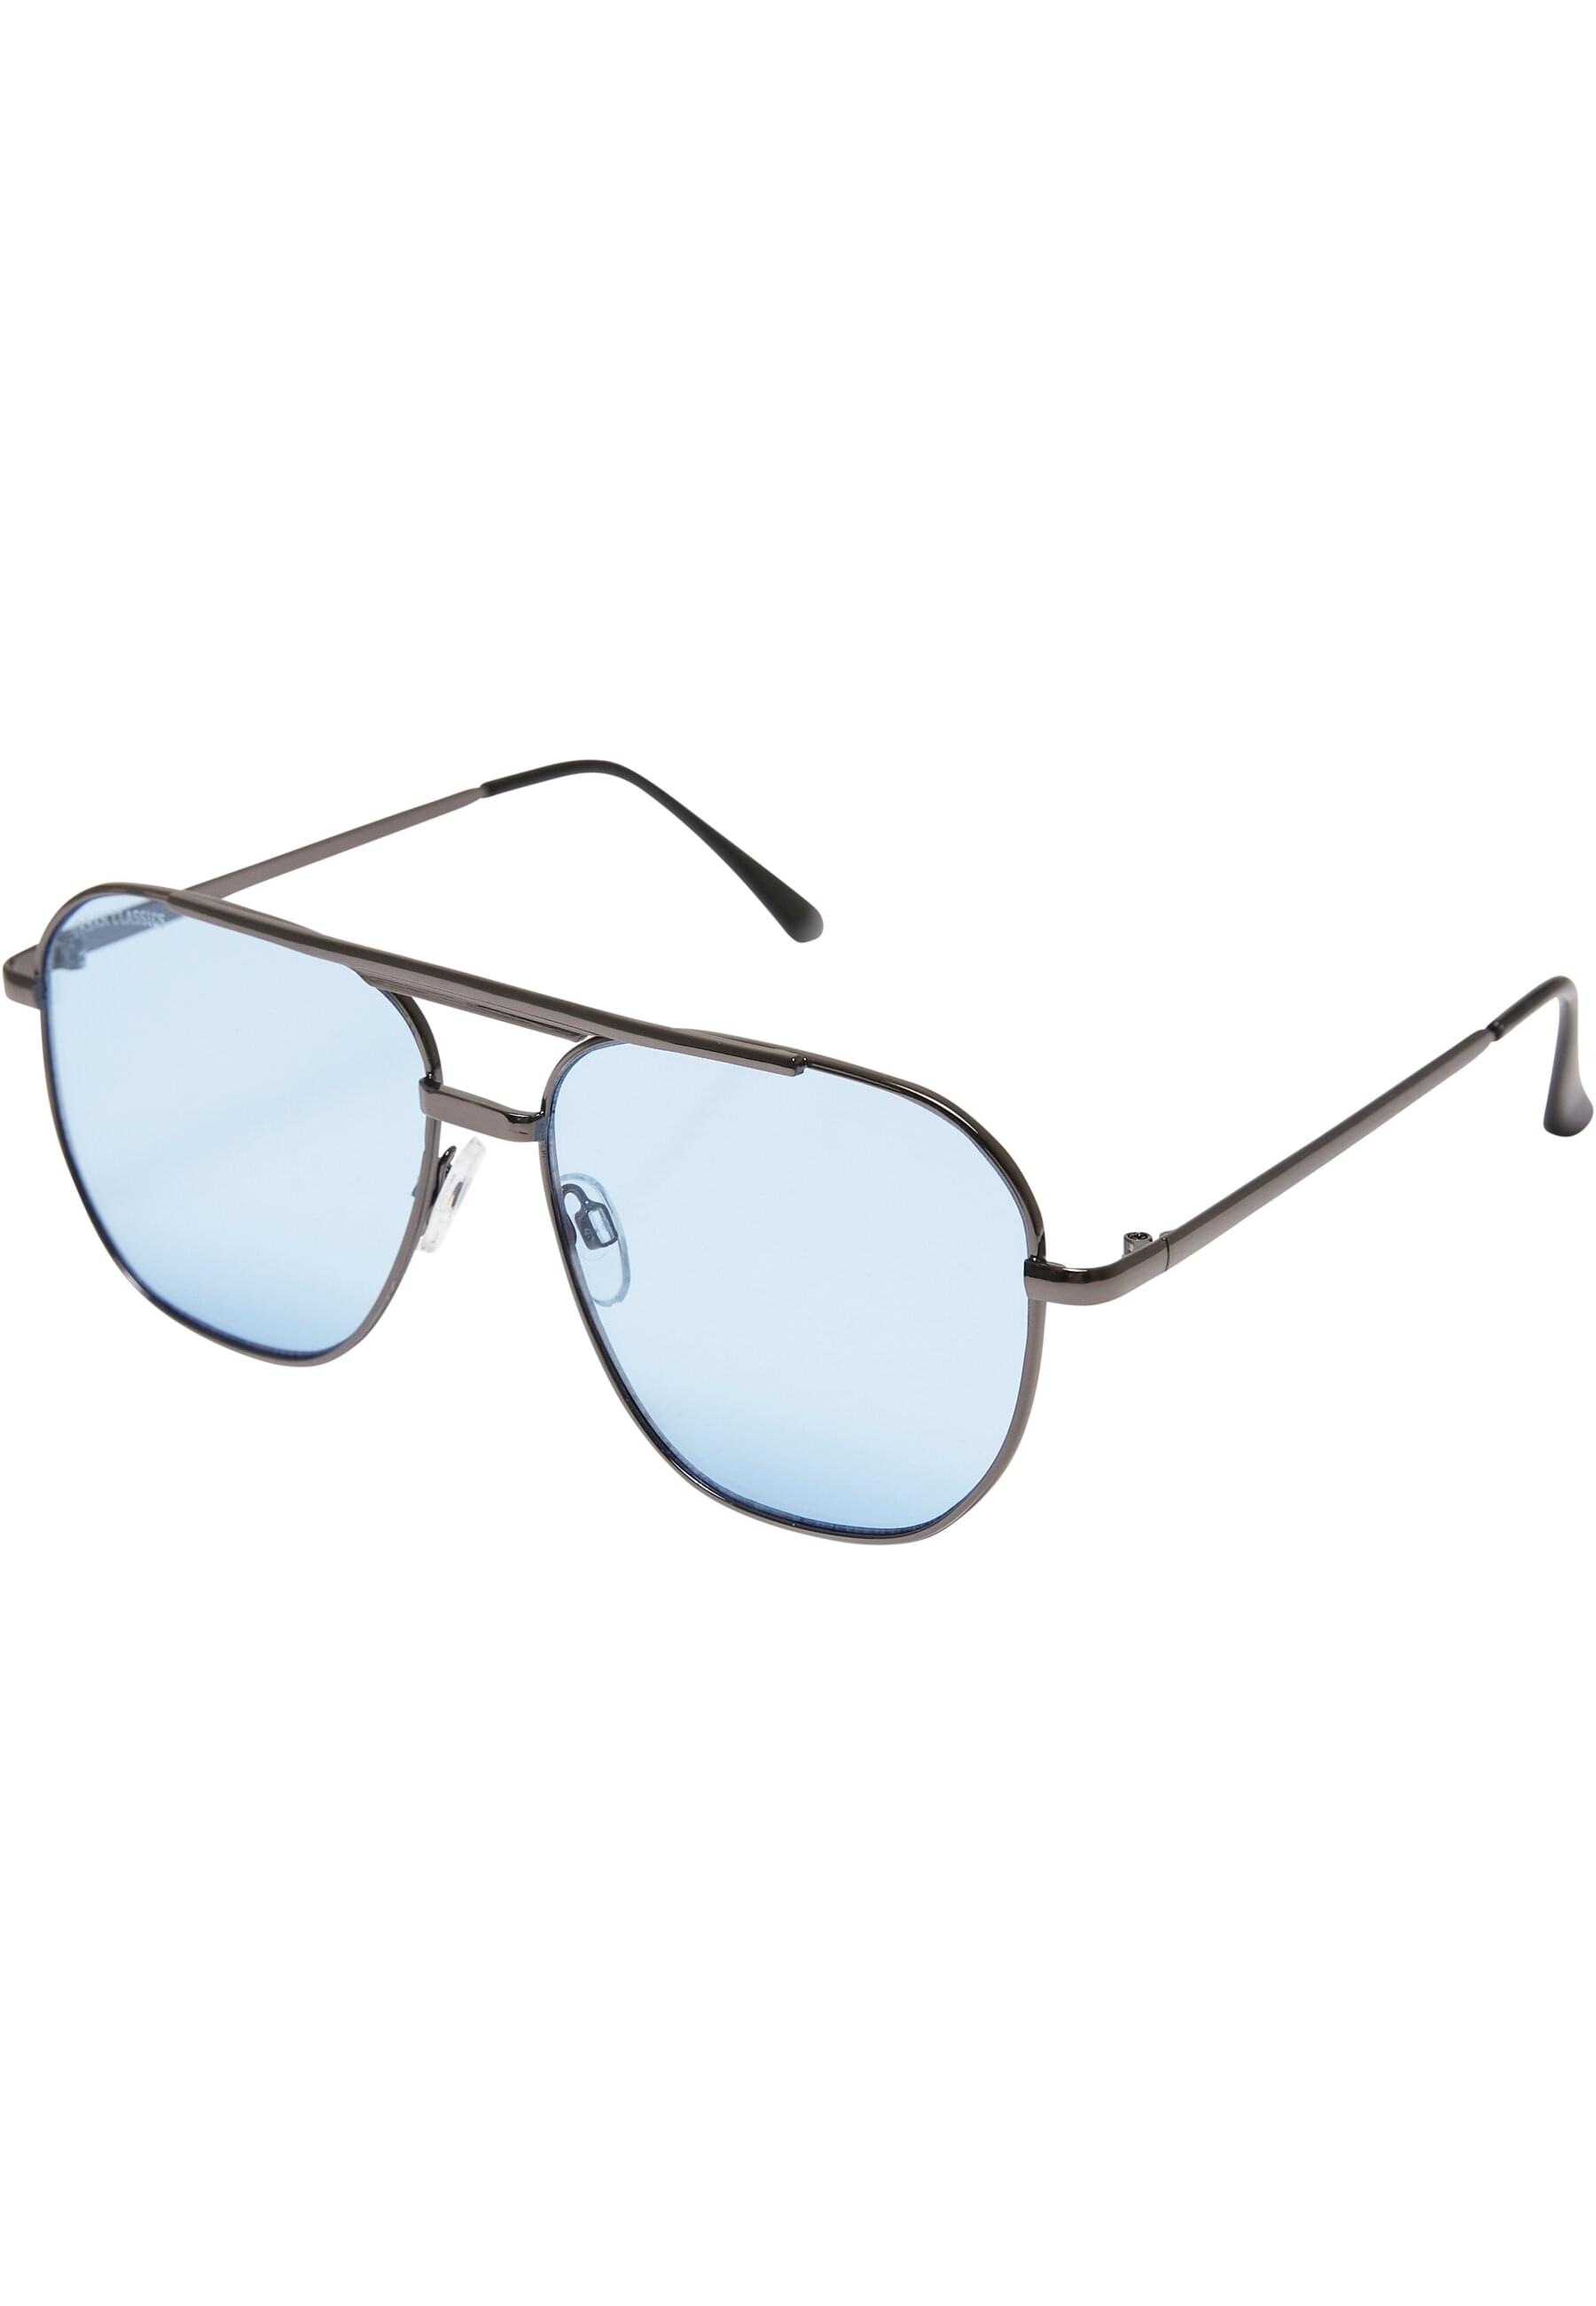 URBAN CLASSICS Sonnenbrille »Urban Classics Unisex Sunglasses Manila«